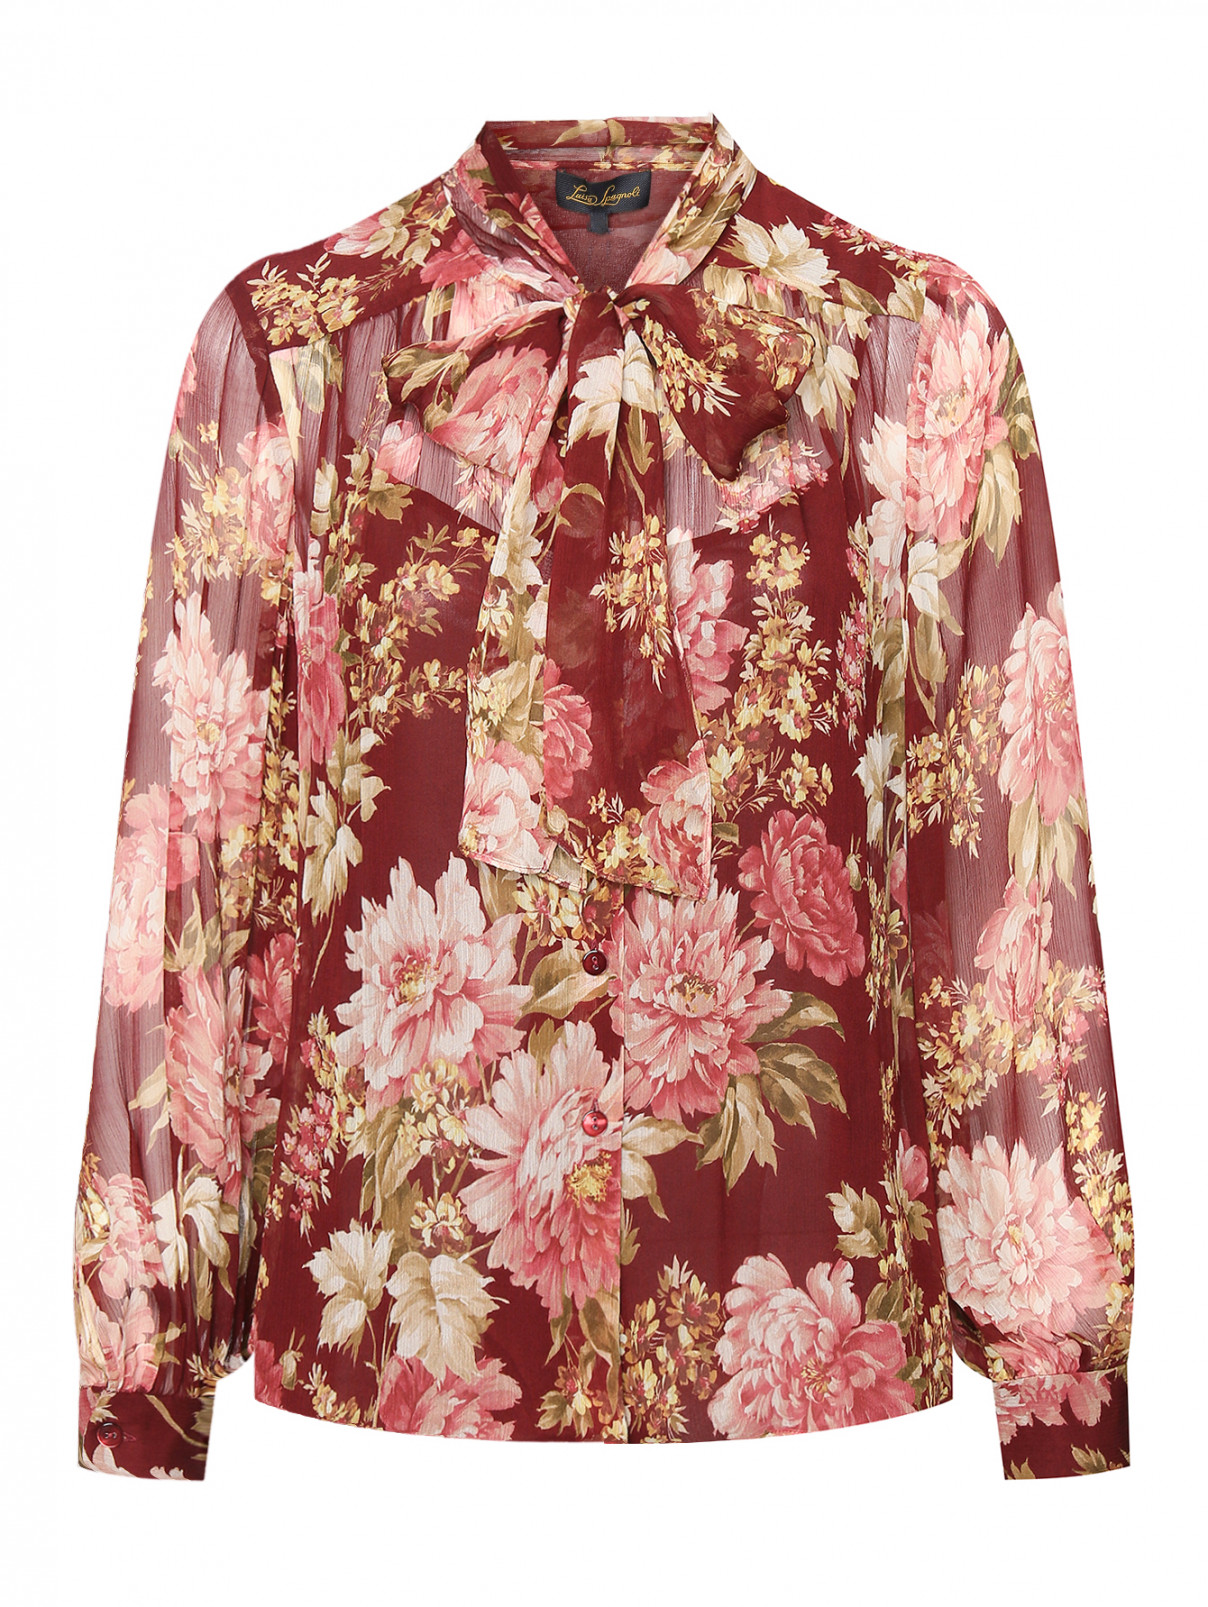 Блуза из вискозы с бантом Luisa Spagnoli  –  Общий вид  – Цвет:  Красный